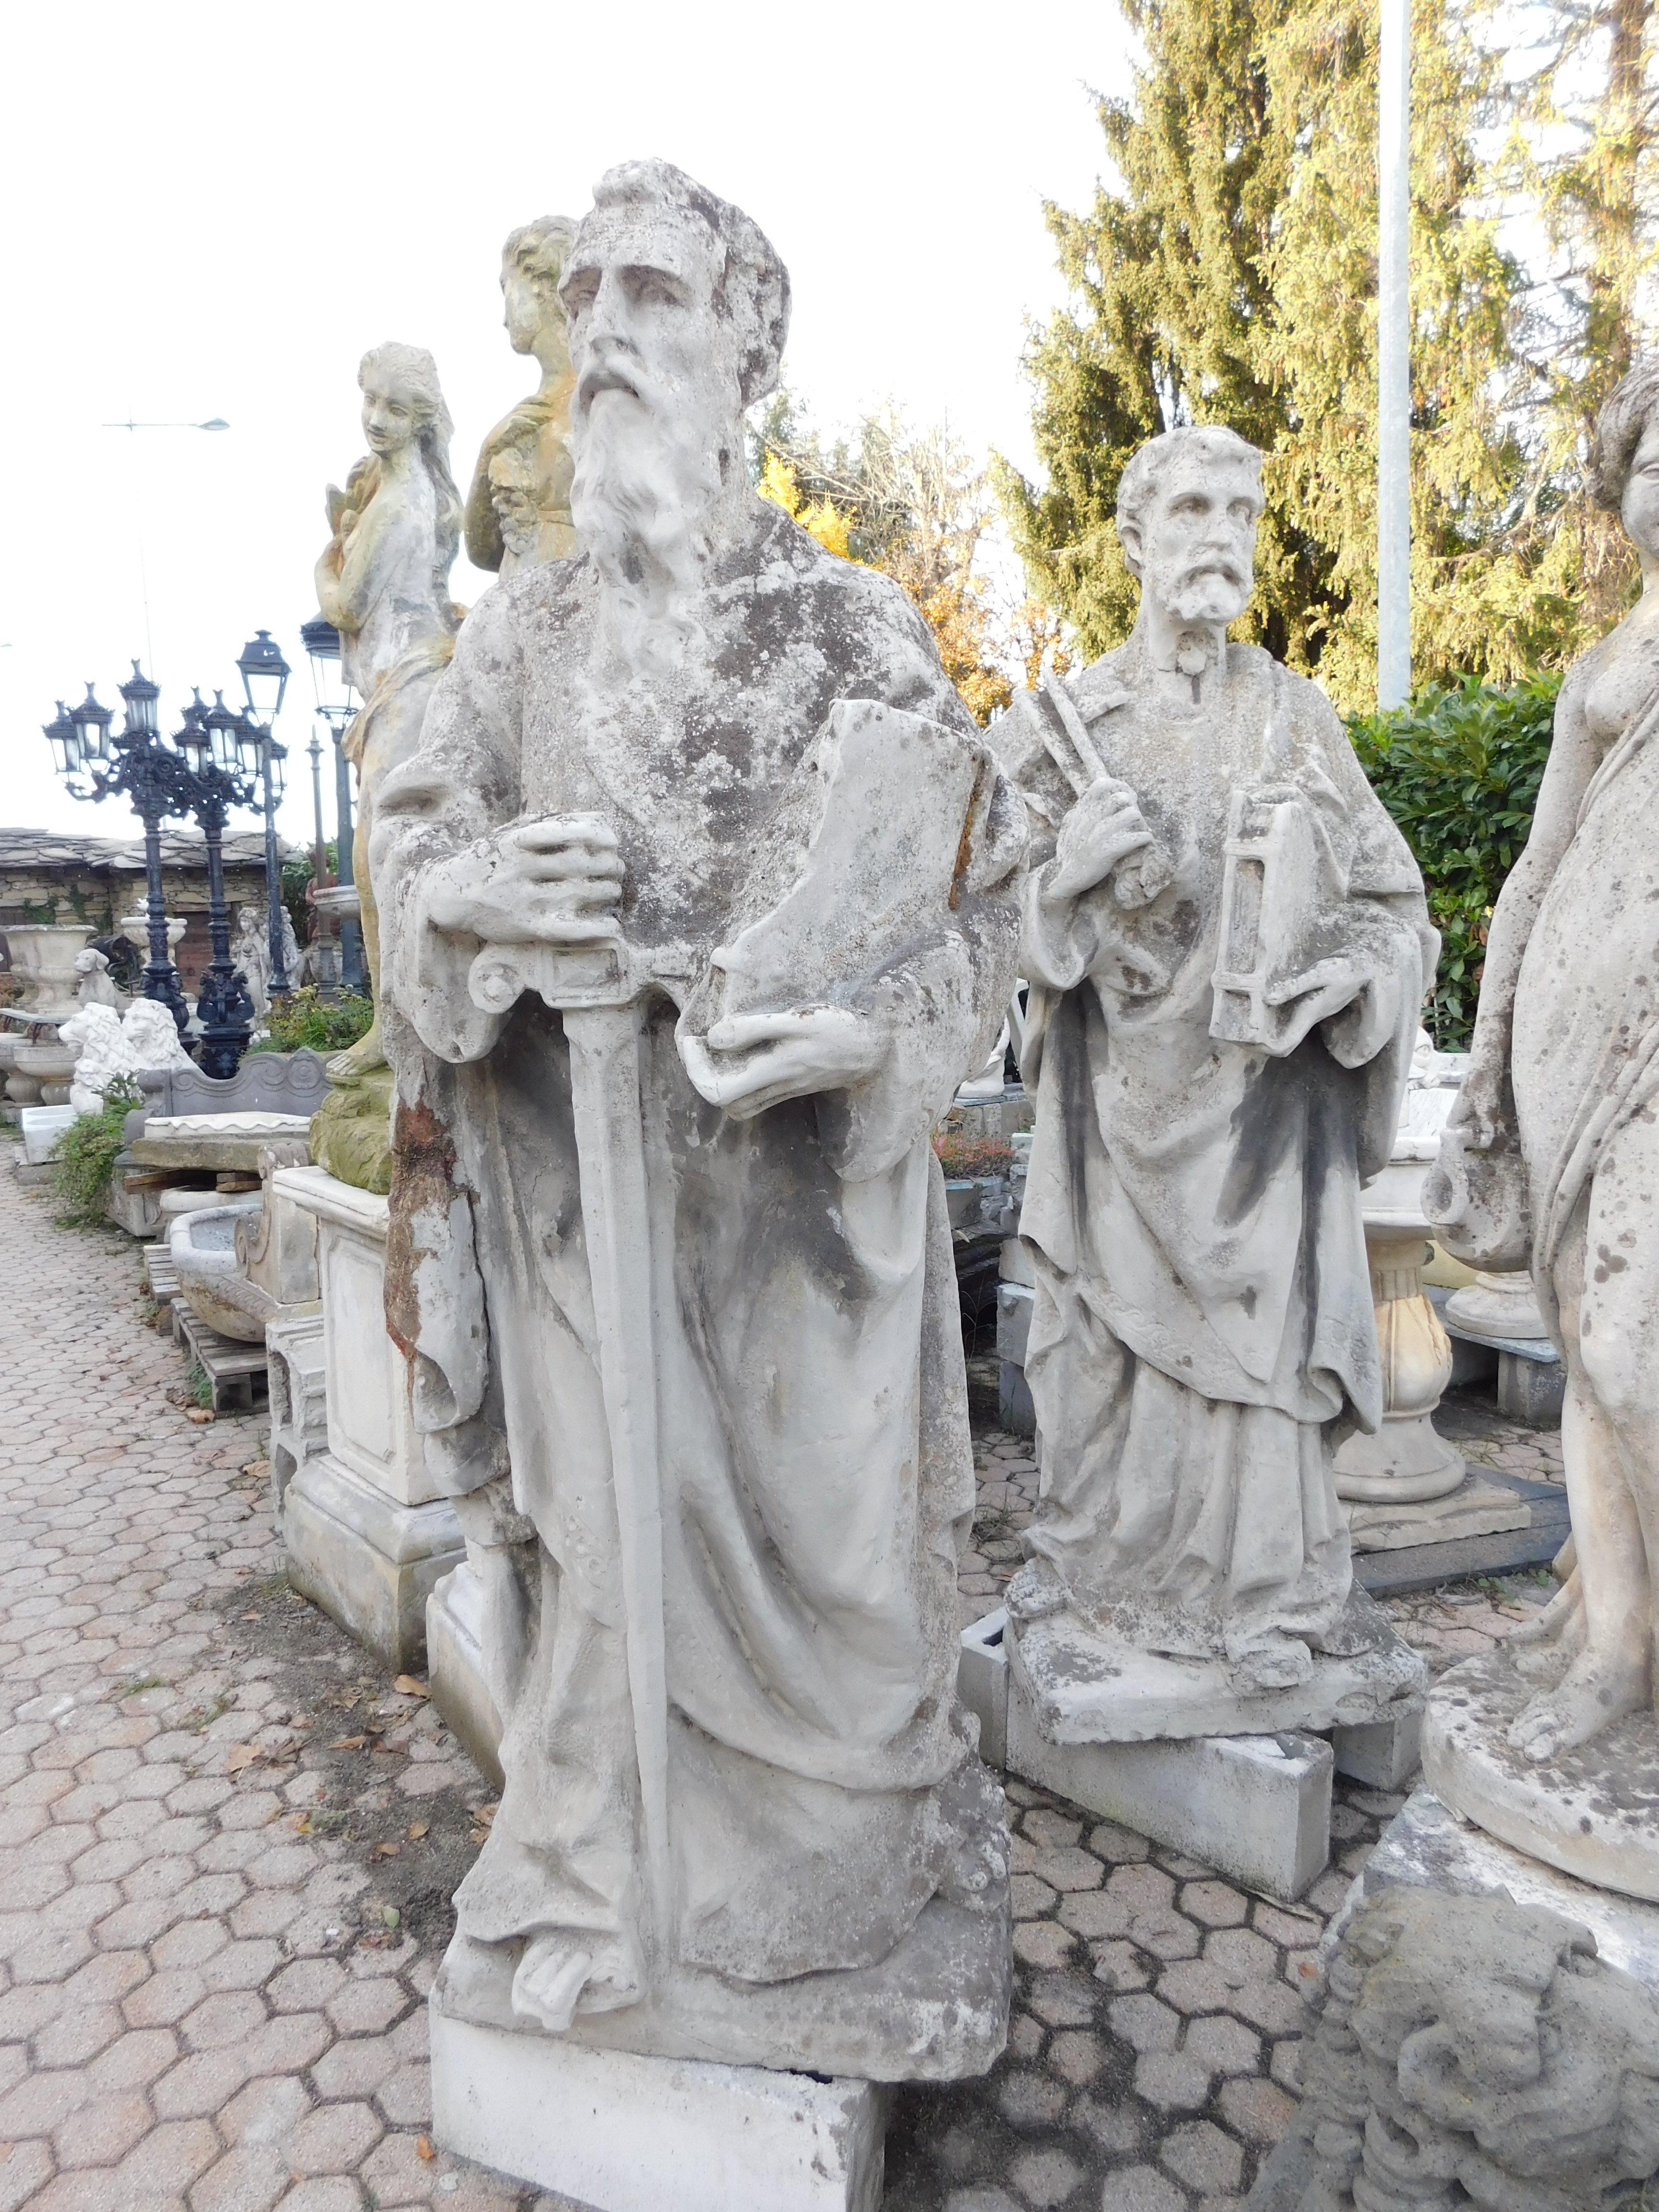 Ancienne paire de statues d'extérieur ou de jardin, en béton, statues de Saint Peters et Saint Paul, construites en Italie au début du 20ème siècle, très belles et pittoresques, convenant aussi bien à l'intérieur qu'à l'extérieur.
Ils mesurent